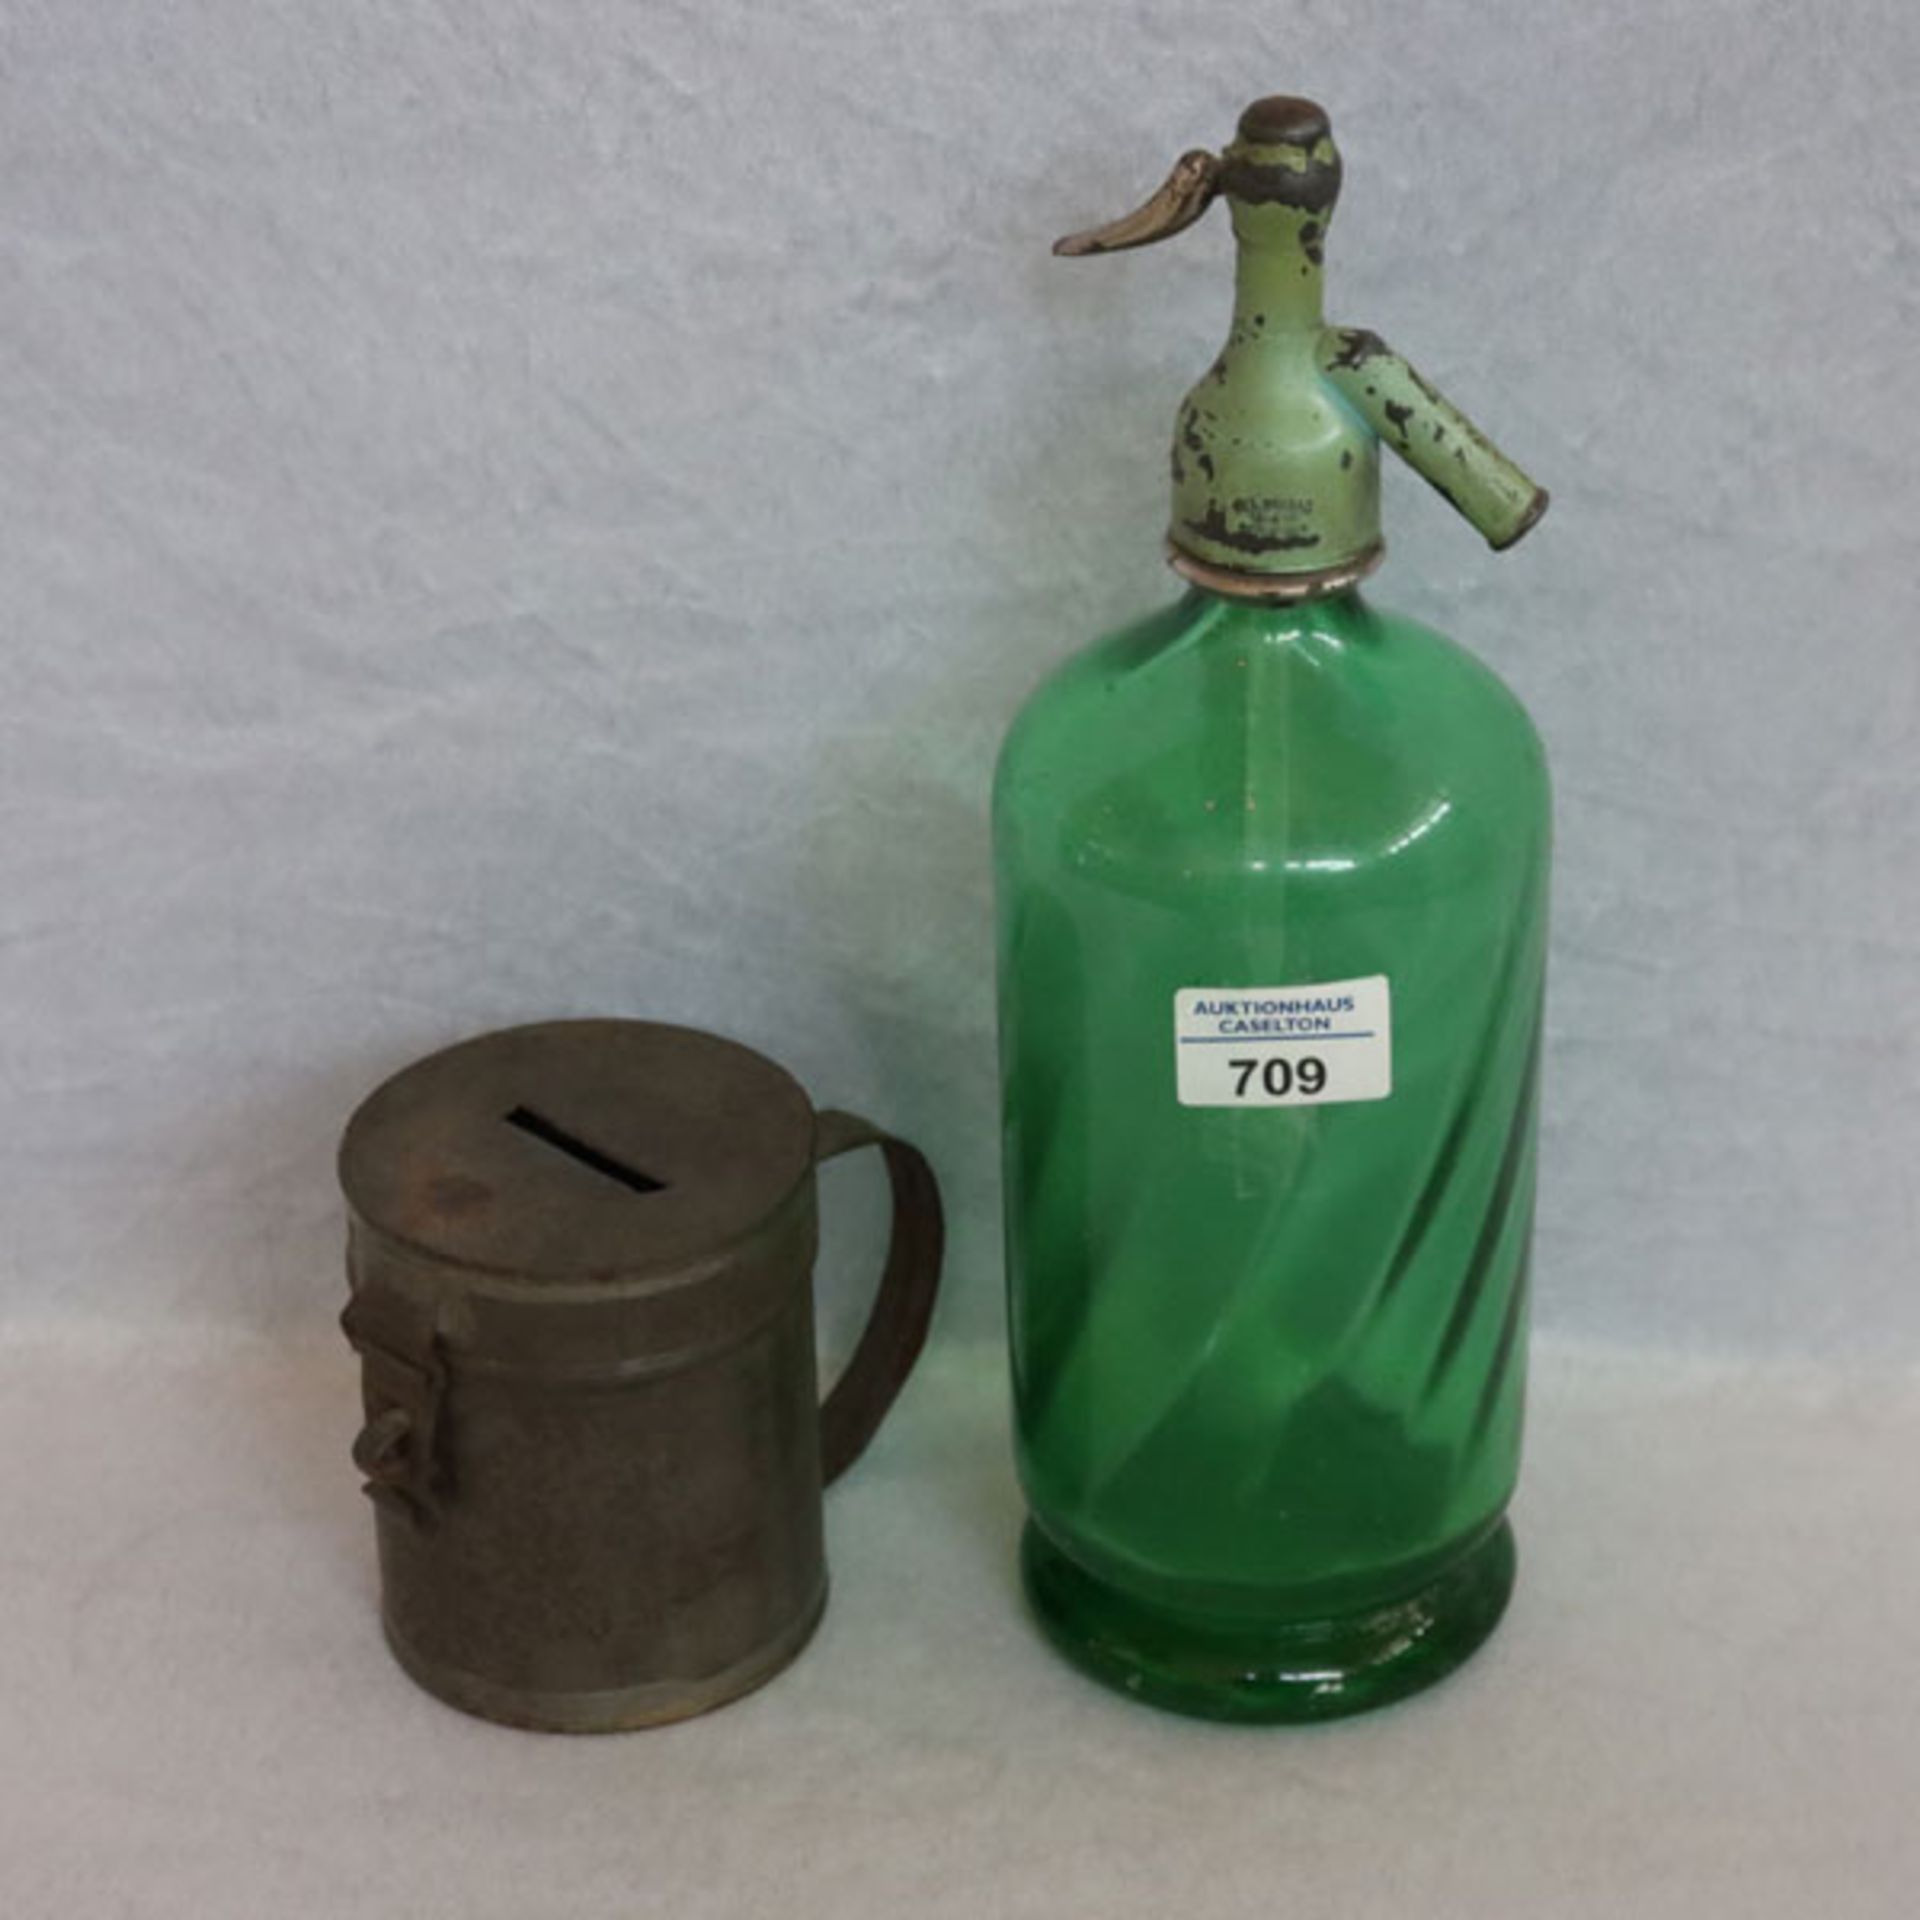 Antike grüne Sodaflasche, H 32 cm, D 11 cm, und Opferdose für Kollekte, ohne Schloß, H 11 cm, D 9